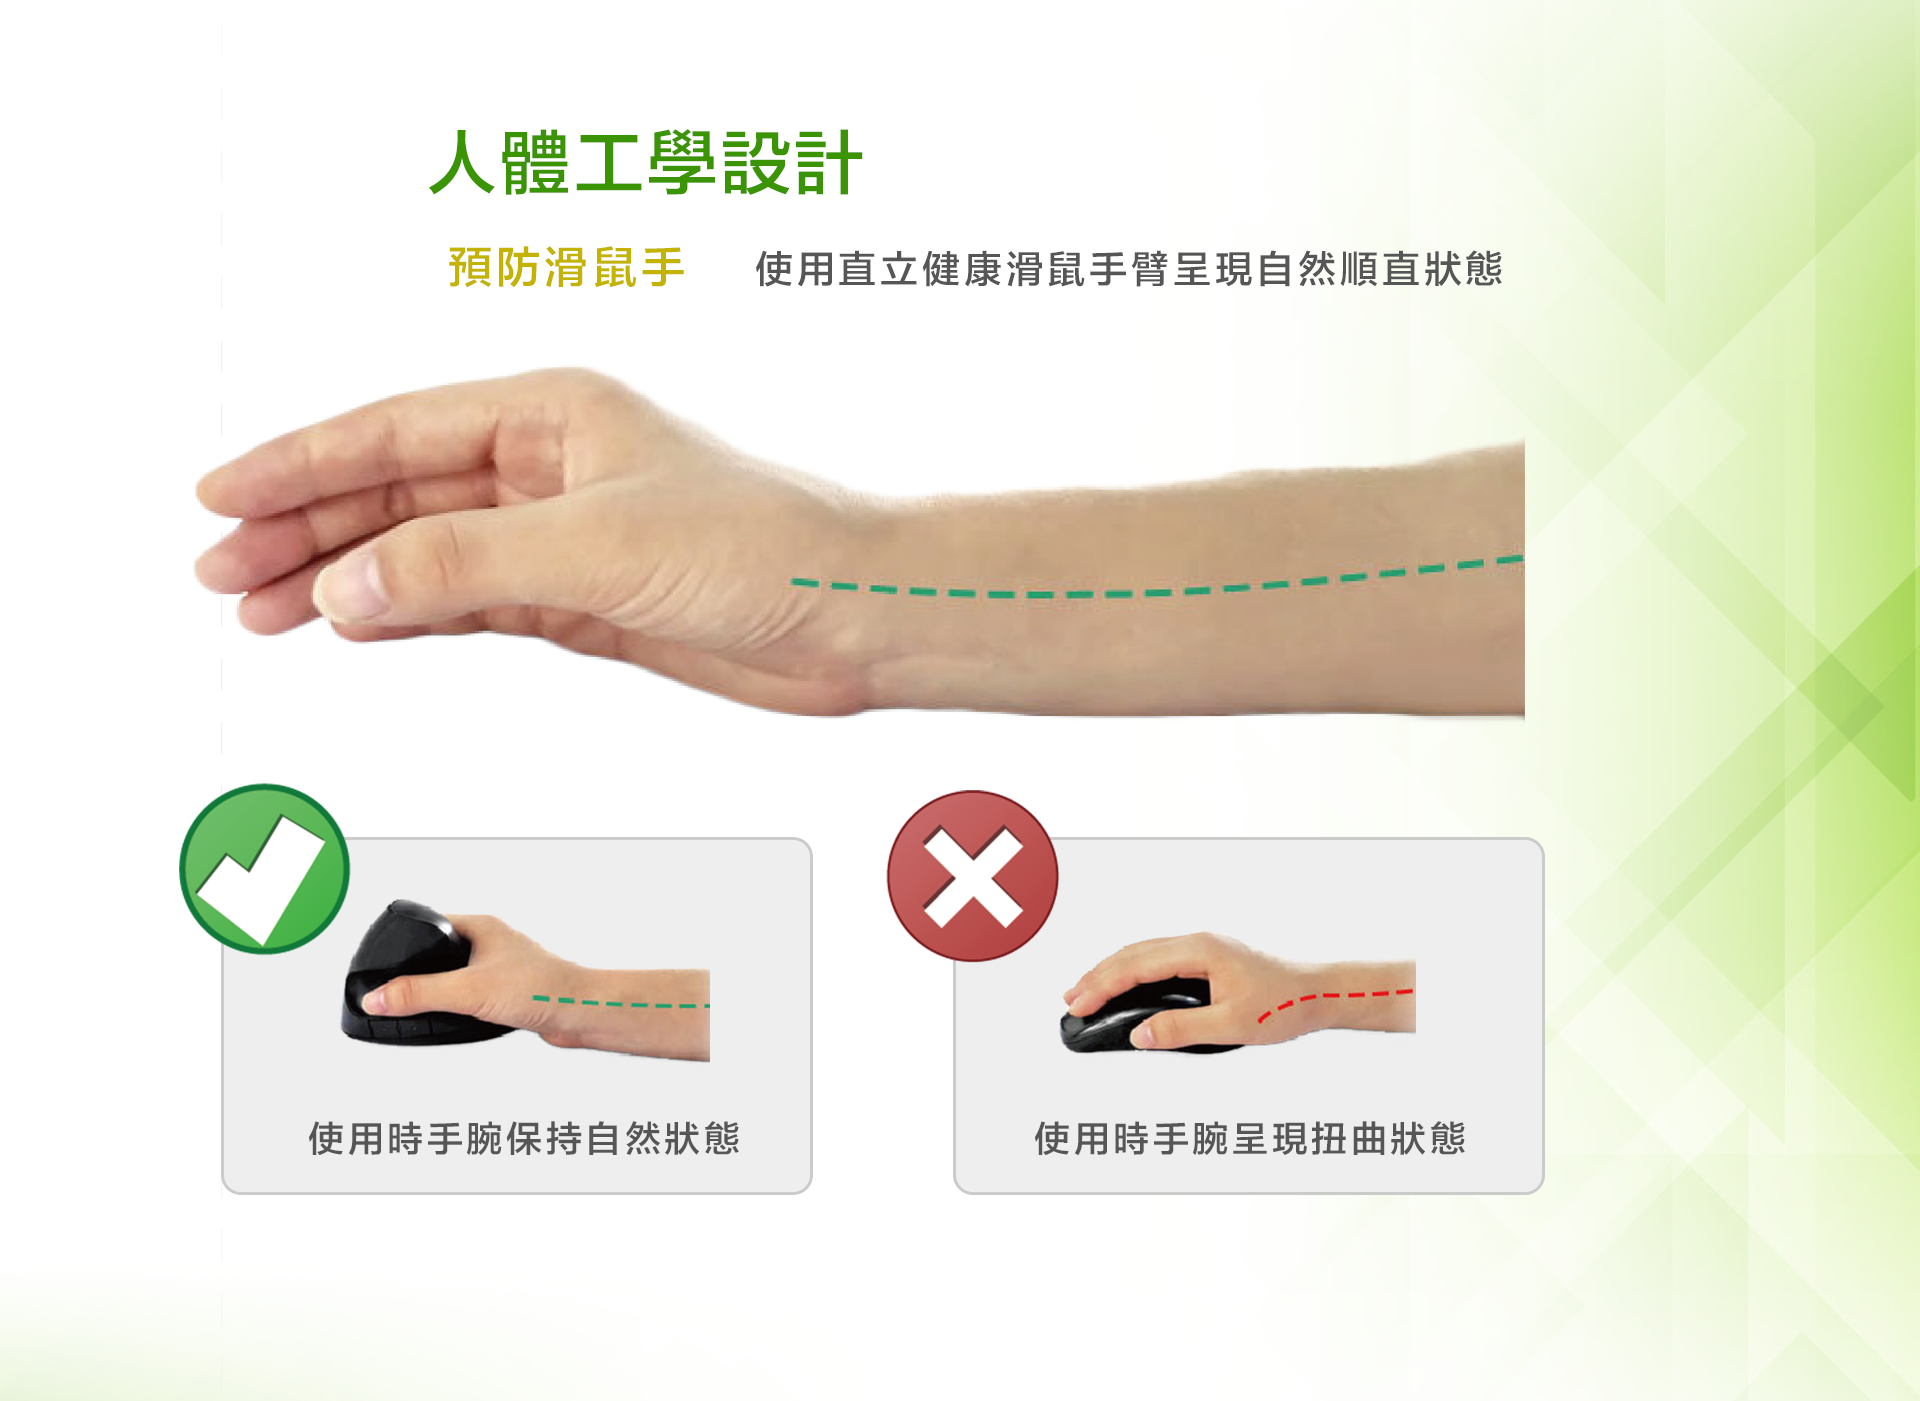 人體工學設計，預防滑鼠手，使用直立健康滑鼠手臂呈現自然順直狀態